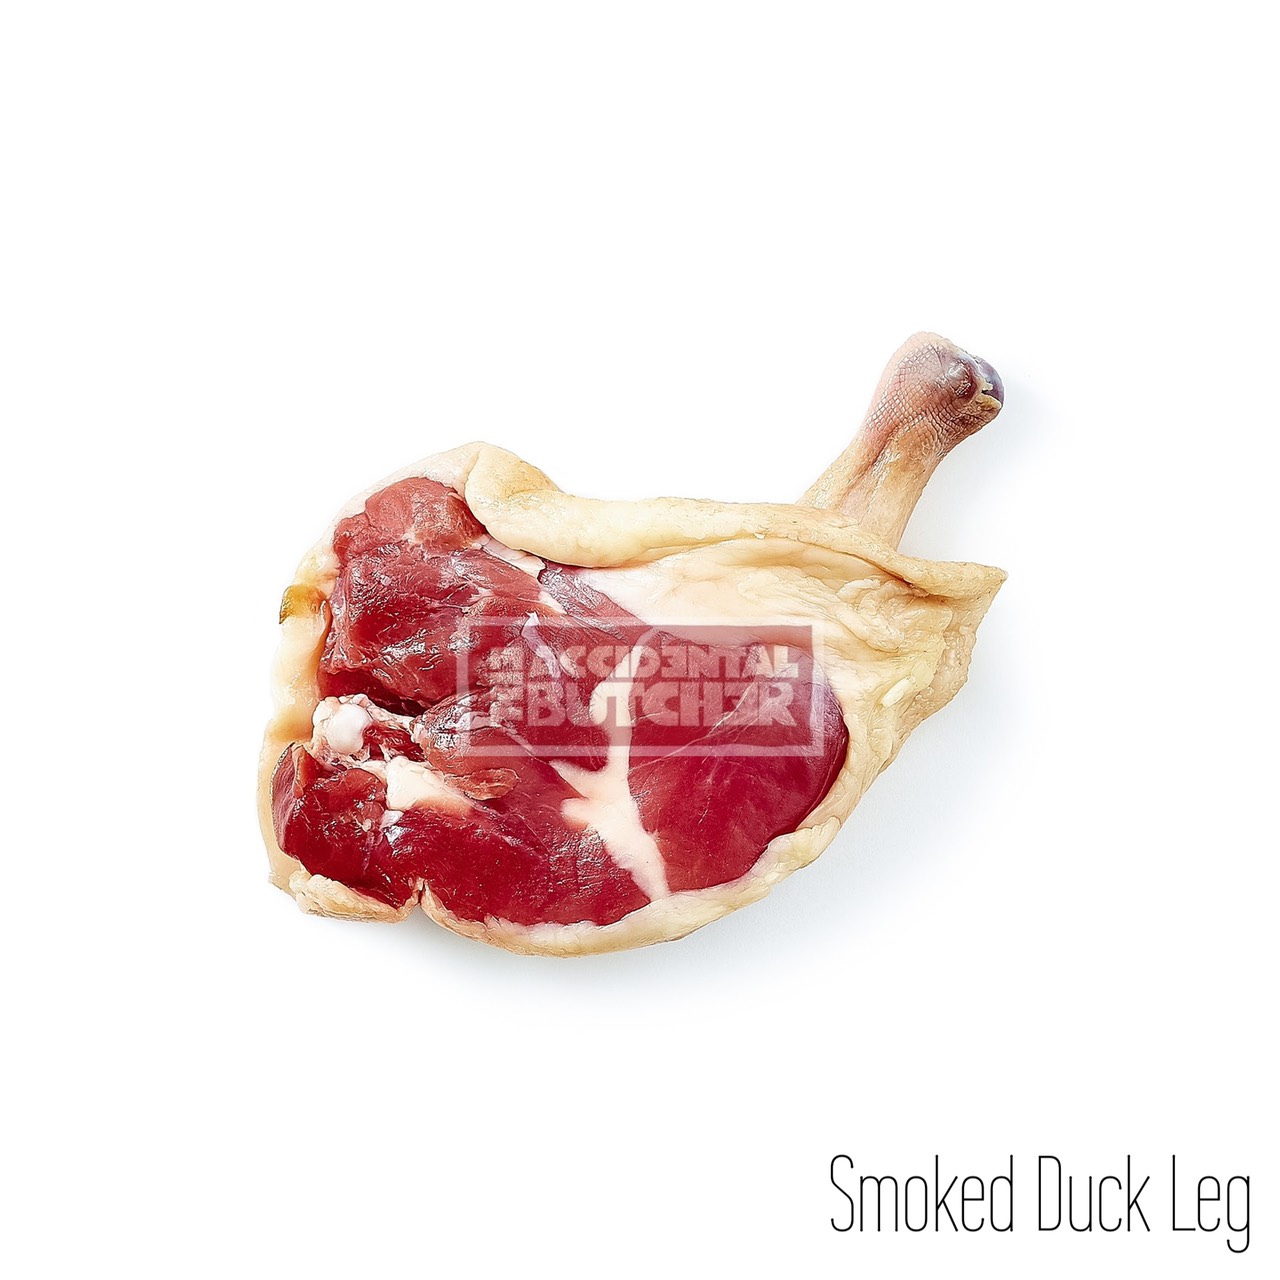 Smoked Duck Leg